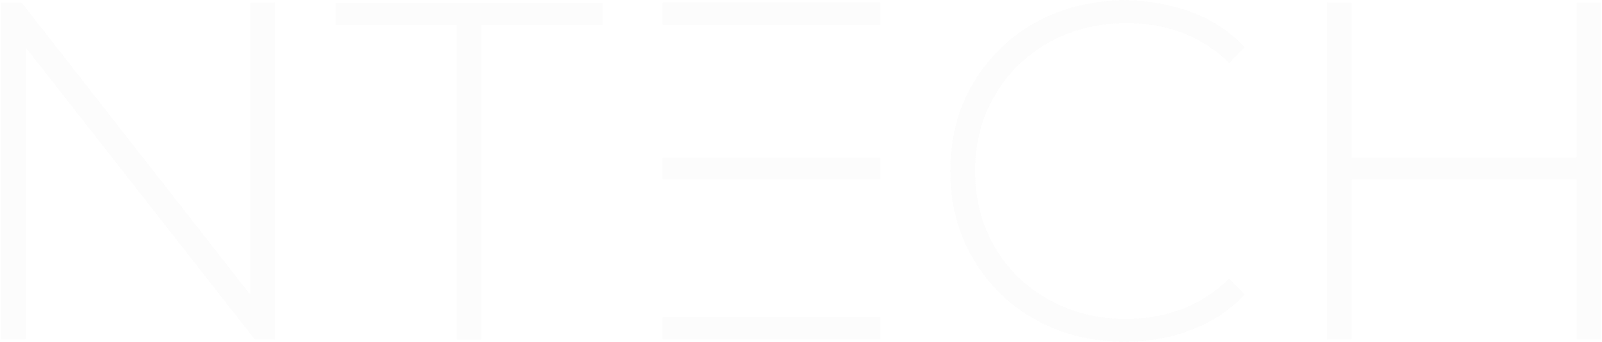 ntech logo design